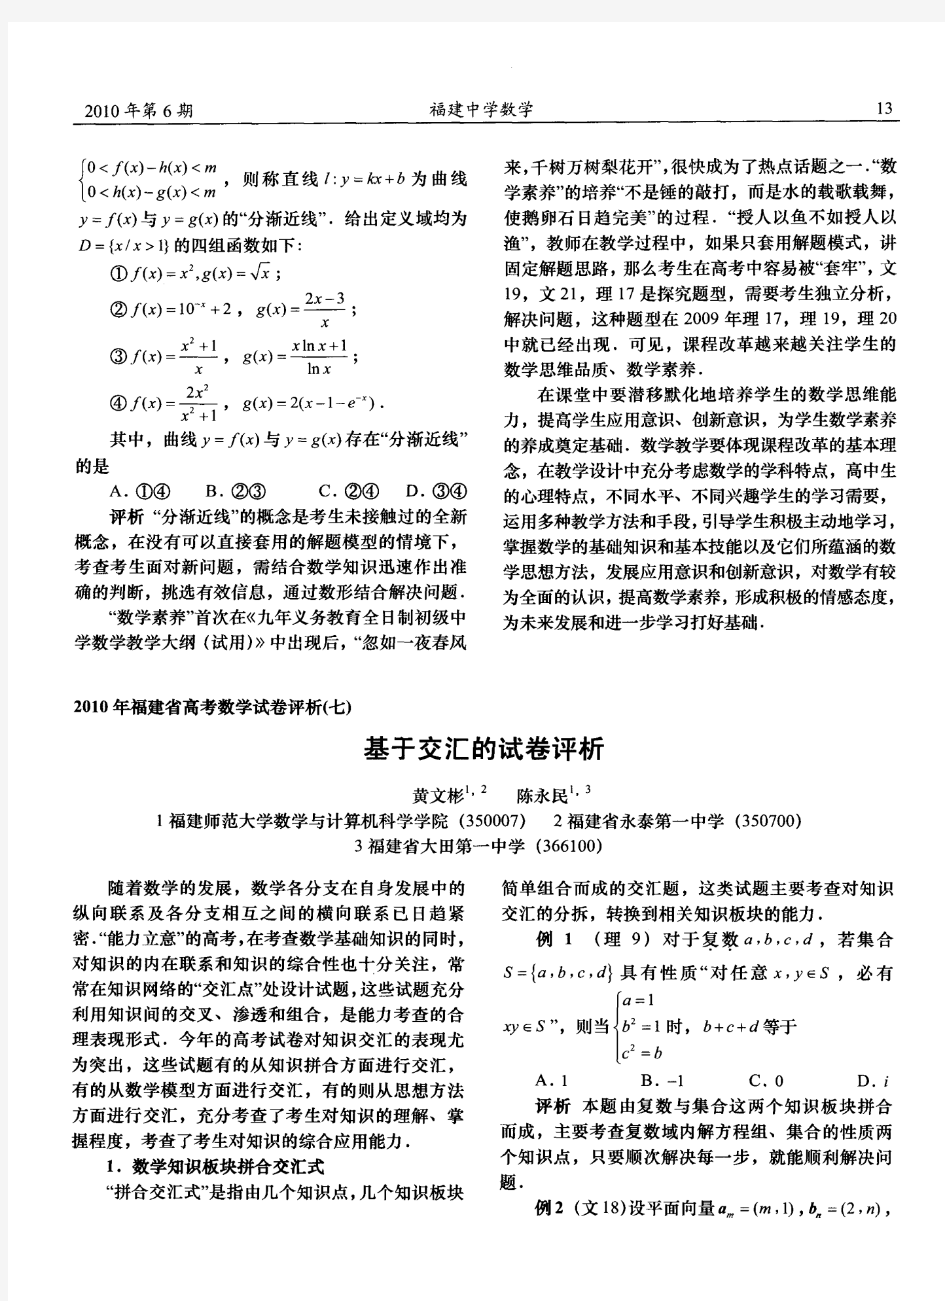 2010年福建省高考数学试卷评析(七)基于交汇的试卷评析